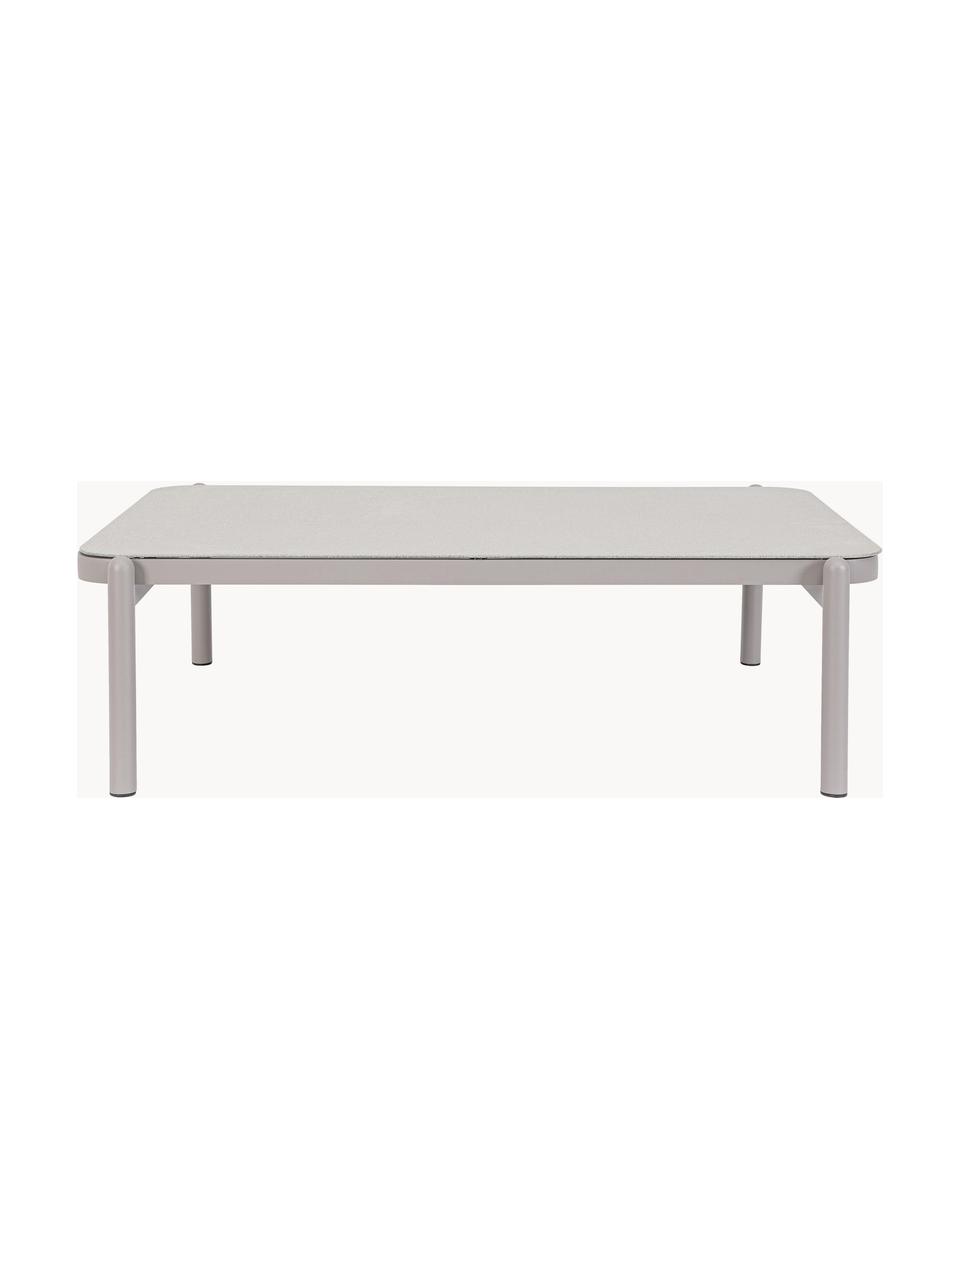 Tavolino da giardino Florencia, Alluminio verniciato a polvere, Grigio chiaro, Larg. 120 x Prof. 75 cm